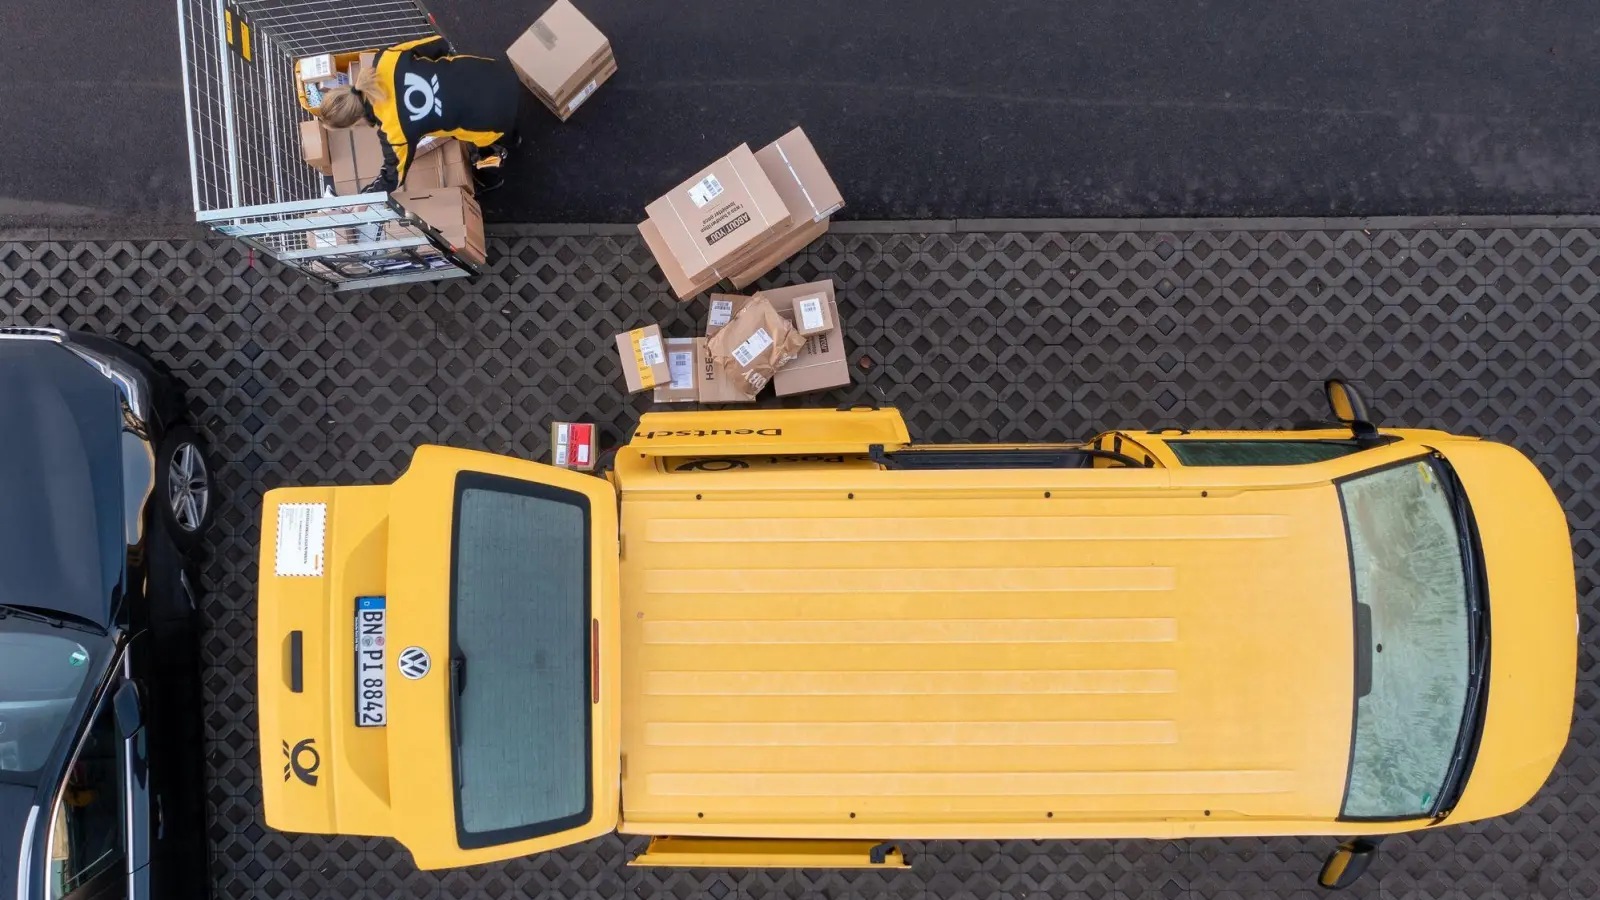 Logistikunternehmen haben vor Weihnachten viel zu tun. Schöne Verzierungen auf Paketen können bei automatisierter Sortierung Probleme verursachen und zu zusätzlichen Kosten für manuelle Bearbeitung führen. (Foto: Jan Woitas/dpa/dpa-tmn)